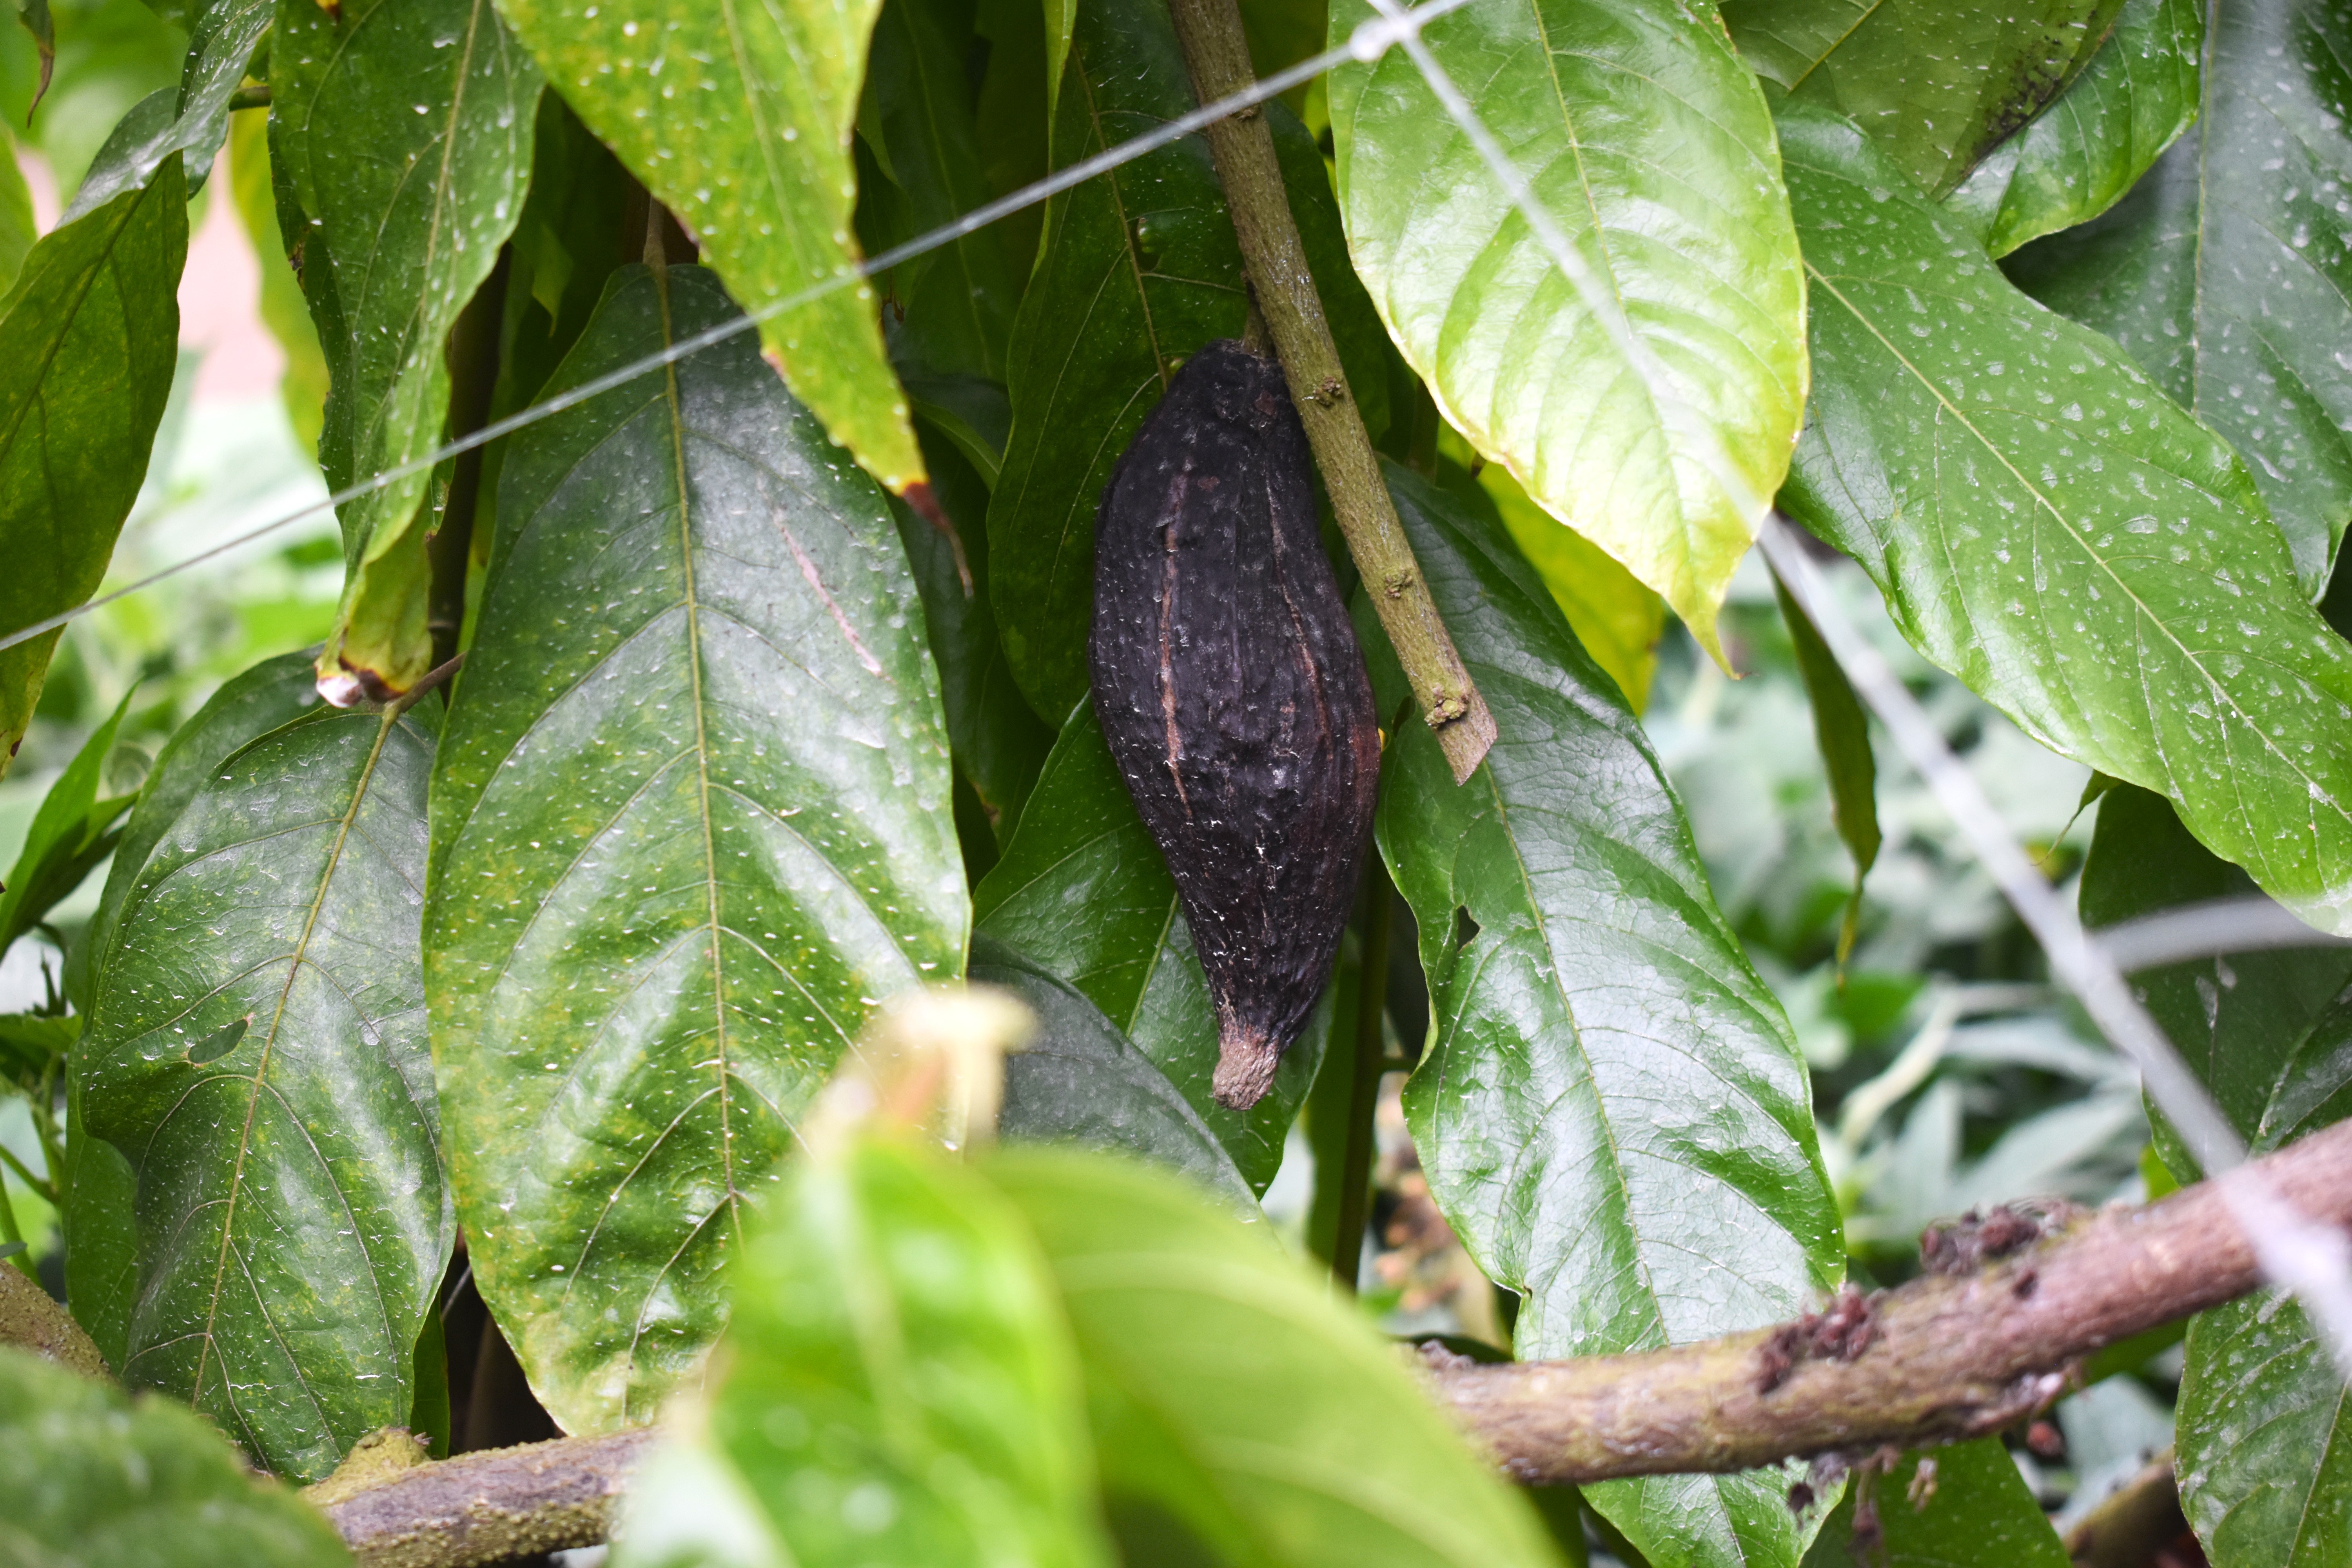 En la sección de Plantas Útiles del Tropicario, los visitantes pueden encontrar plantas de cacao (como en la imagen), café, ají, entre otros. Daniela Gallo Hidalgo-Infobae Colombia